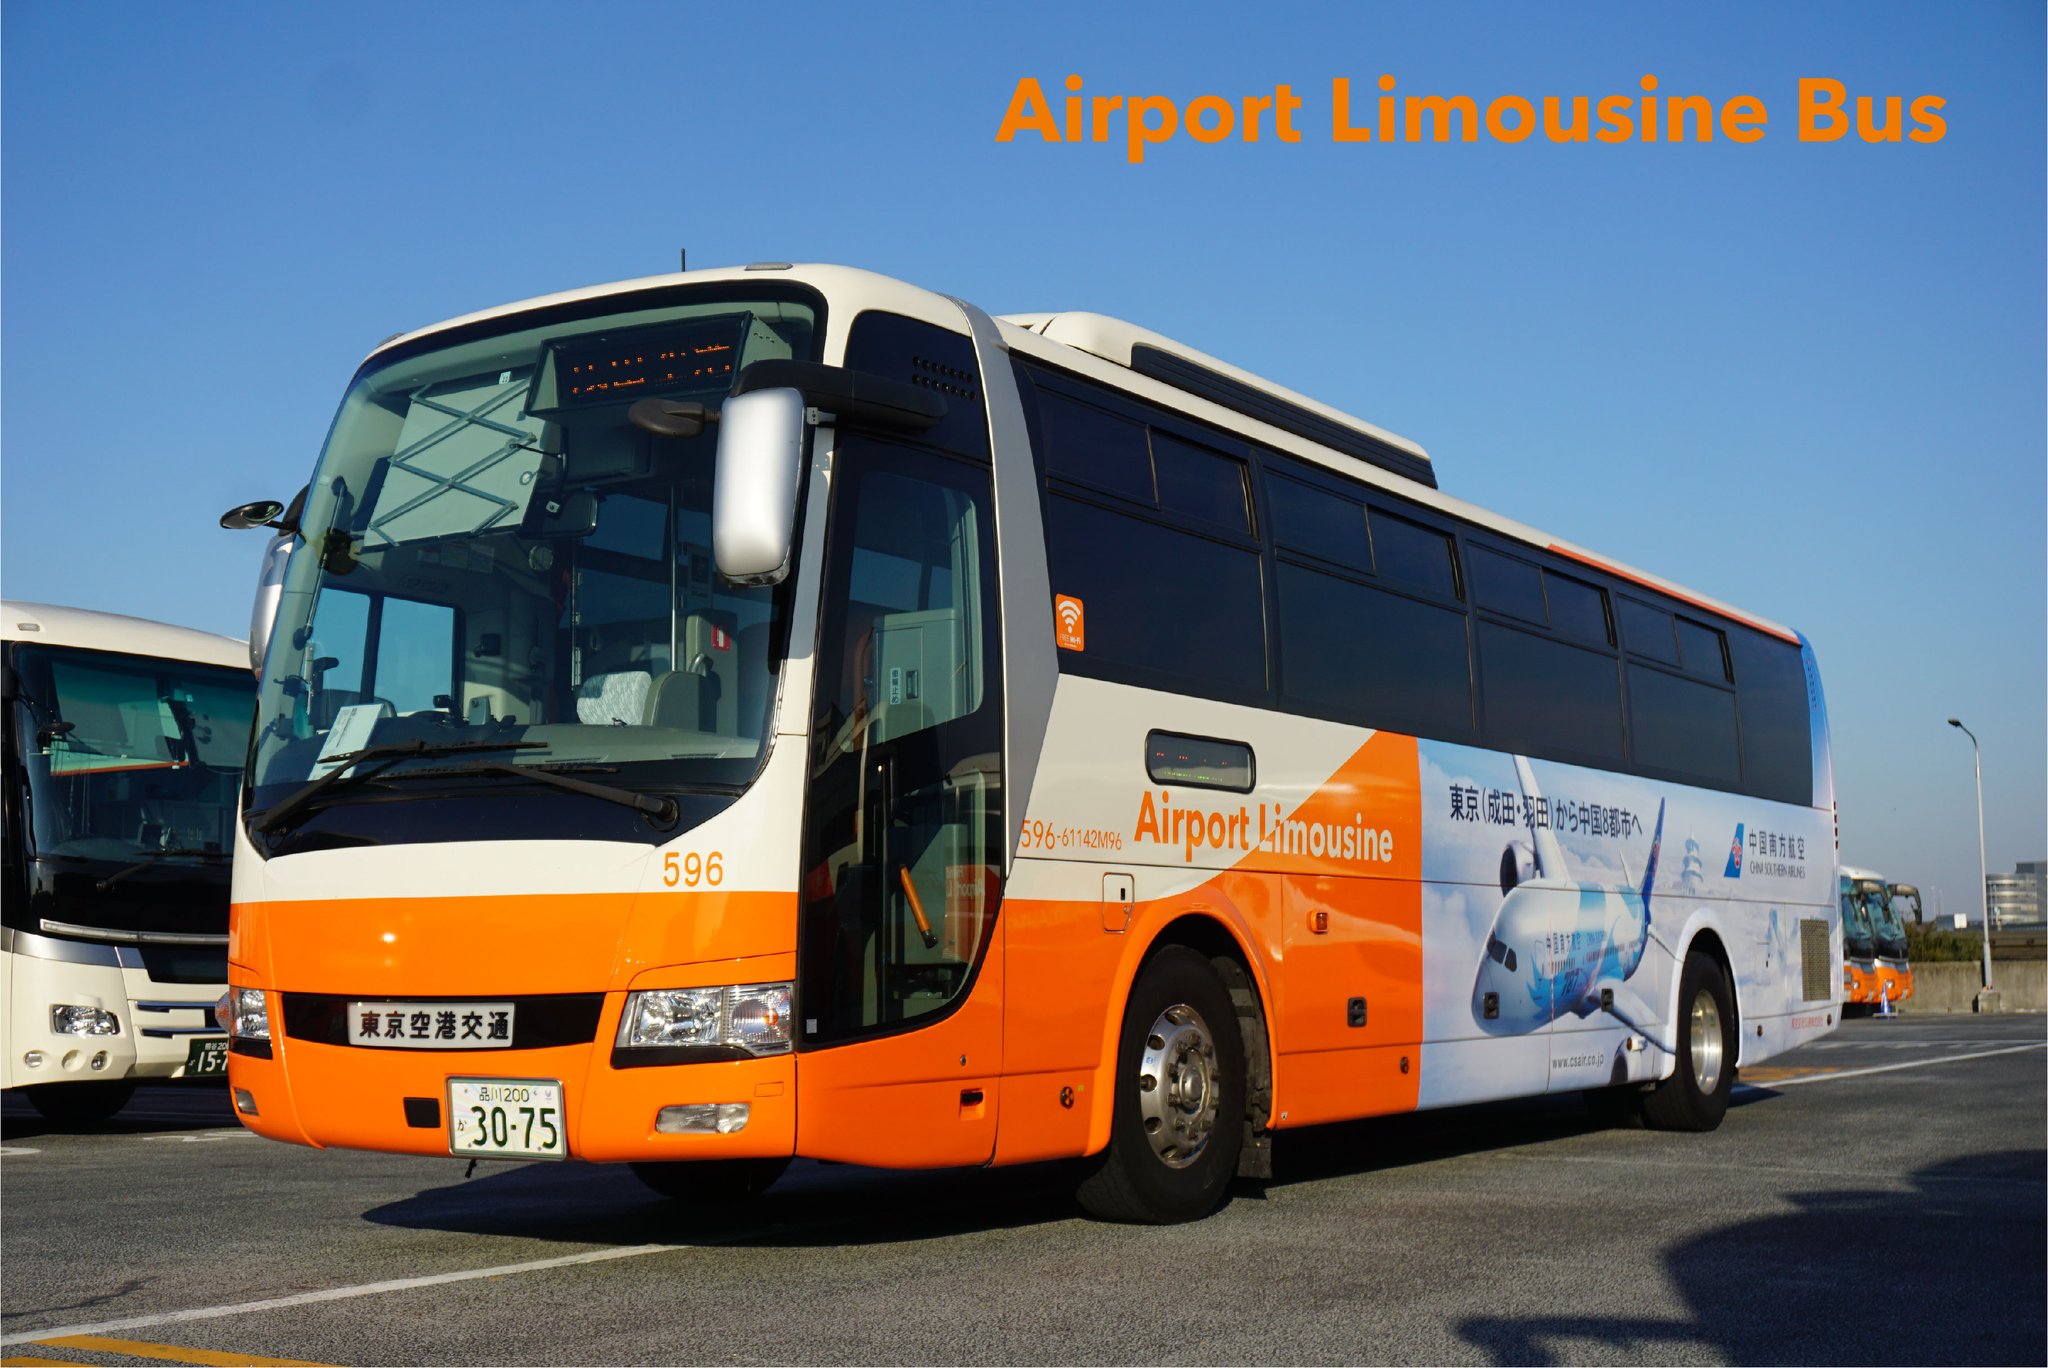 リムジンバス 公式 Airport Limousine Bus 東京空港交通 営業部 本日l3号車の廃車に伴い L596号車に中国南方航空様のラッピングを貼り替えました ナンバーは3075ですが 3085でしたら 同一便名があったそうです 中国南方航空 リムジンバス